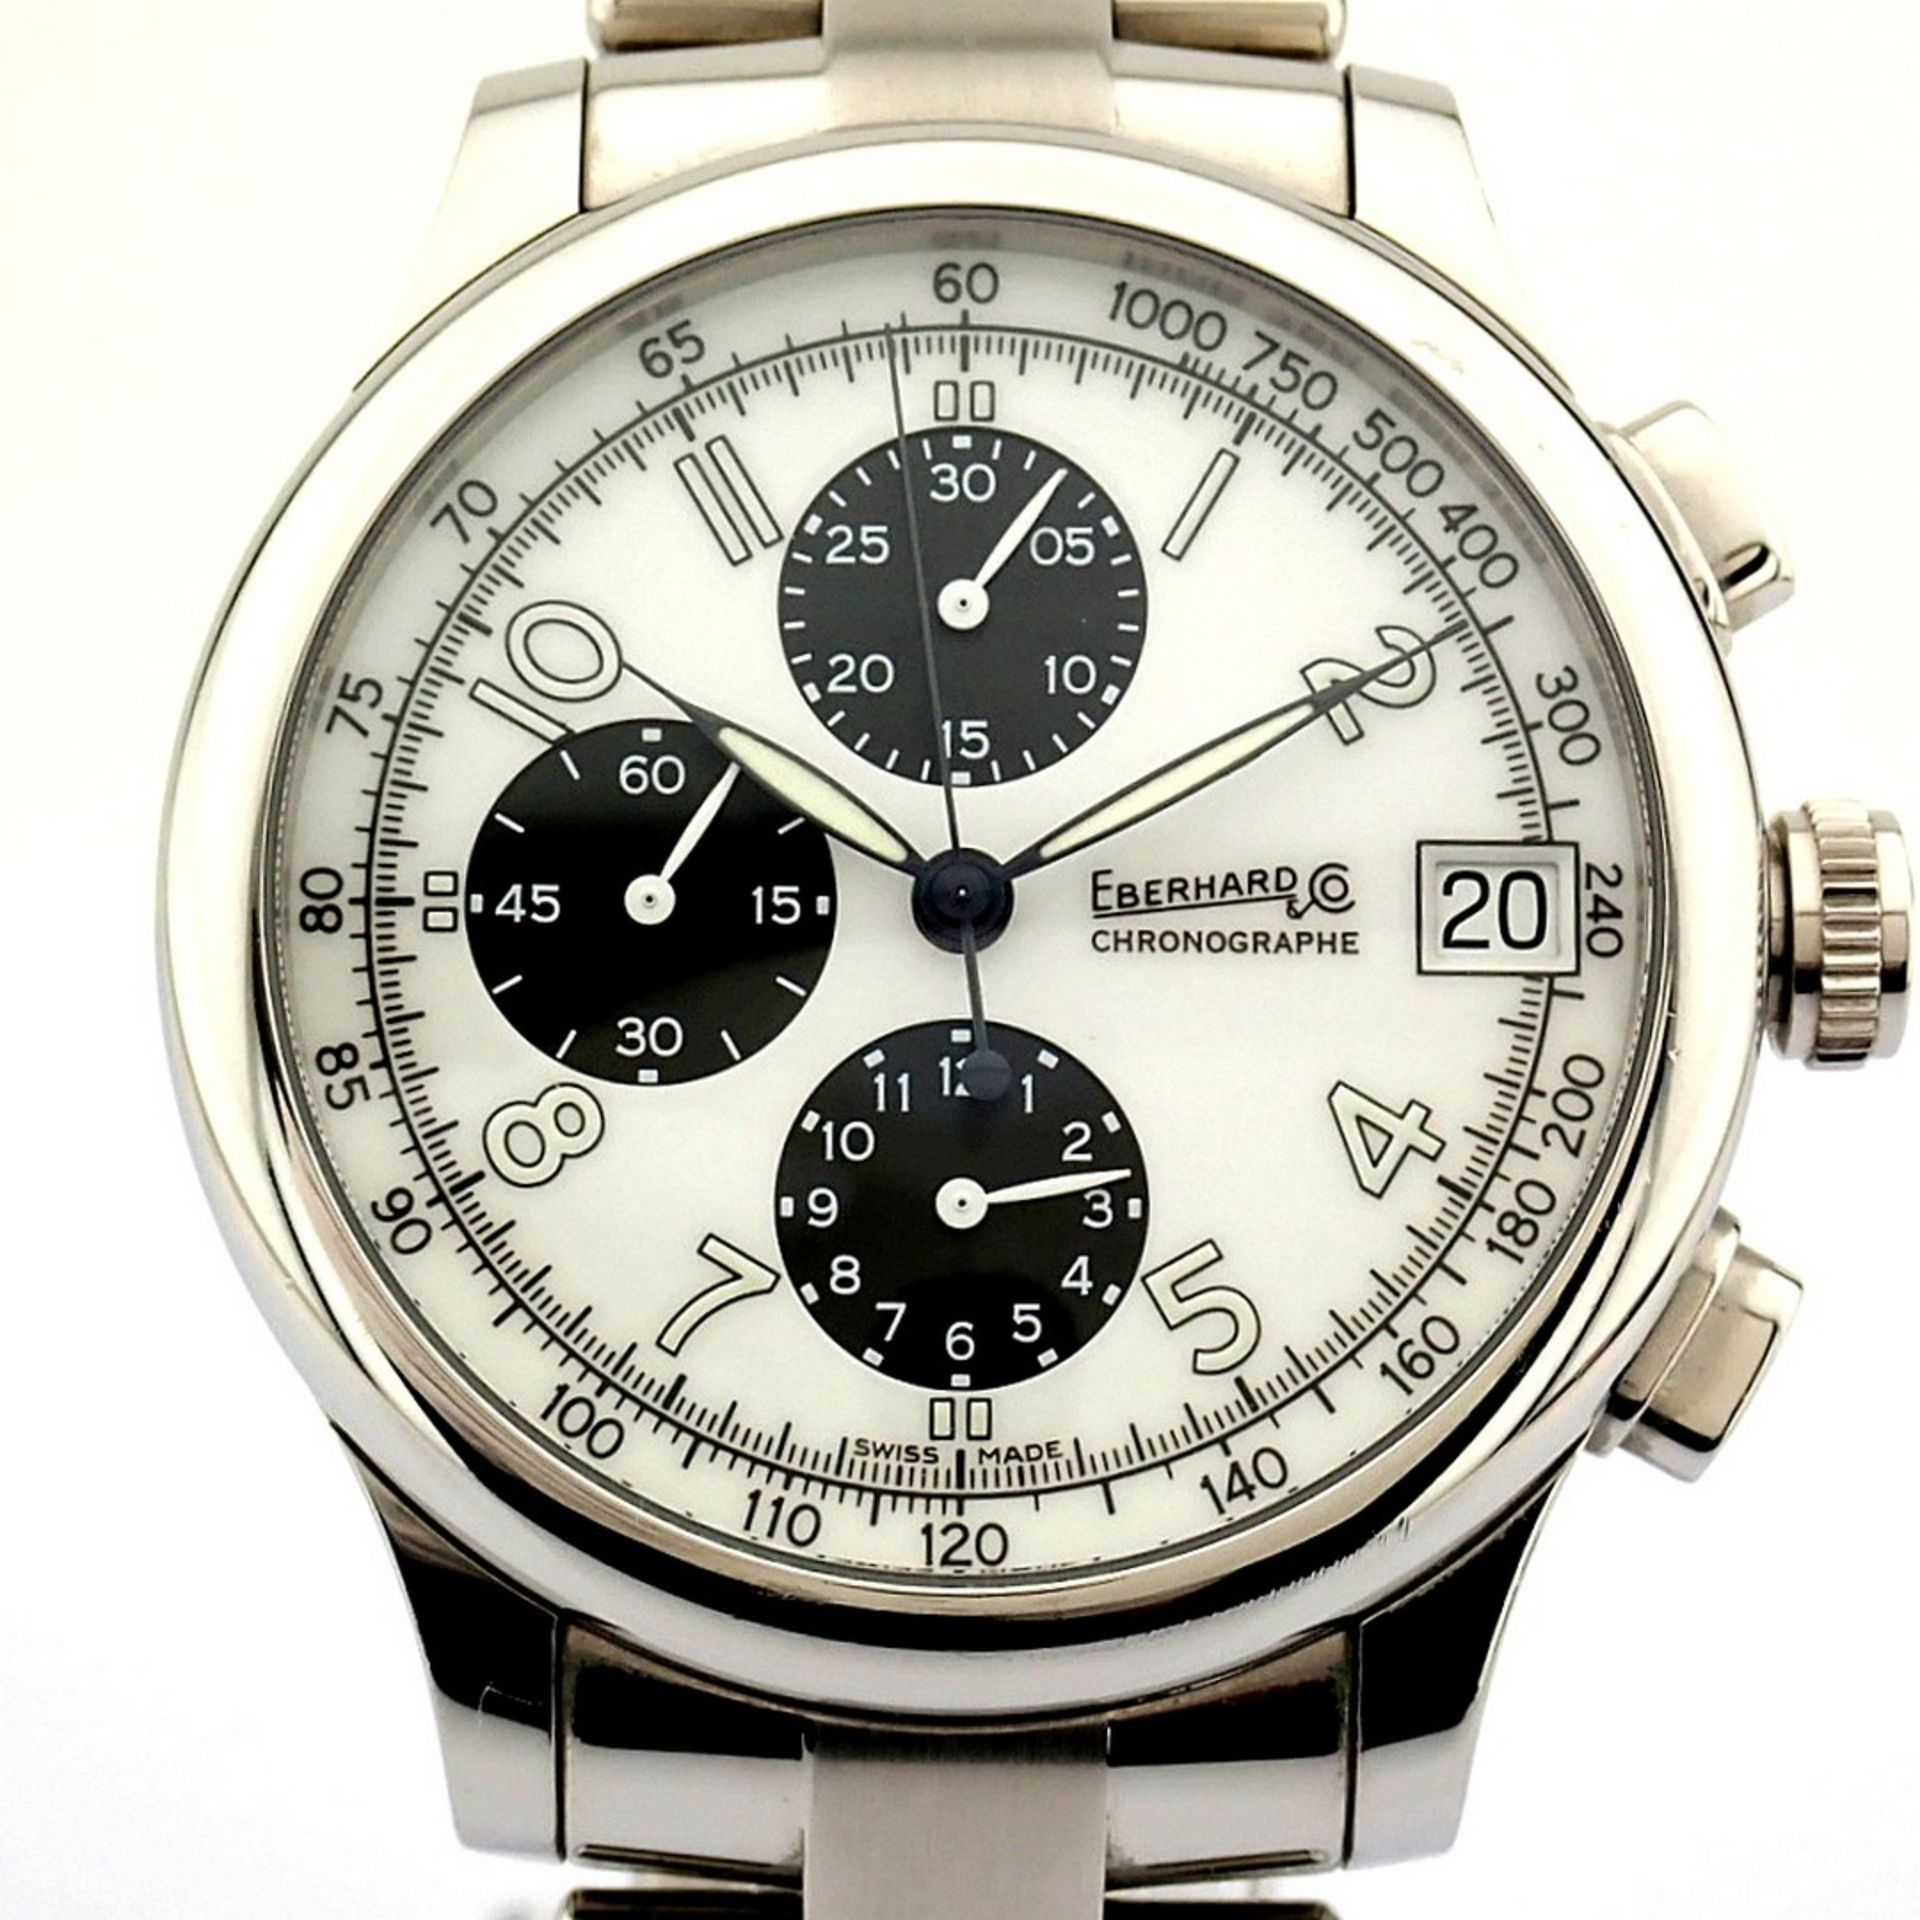 Eberhard & Co. / Traversetolo Chronograph Automatic - Gentlemen's Steel Wristwatch - Image 8 of 11